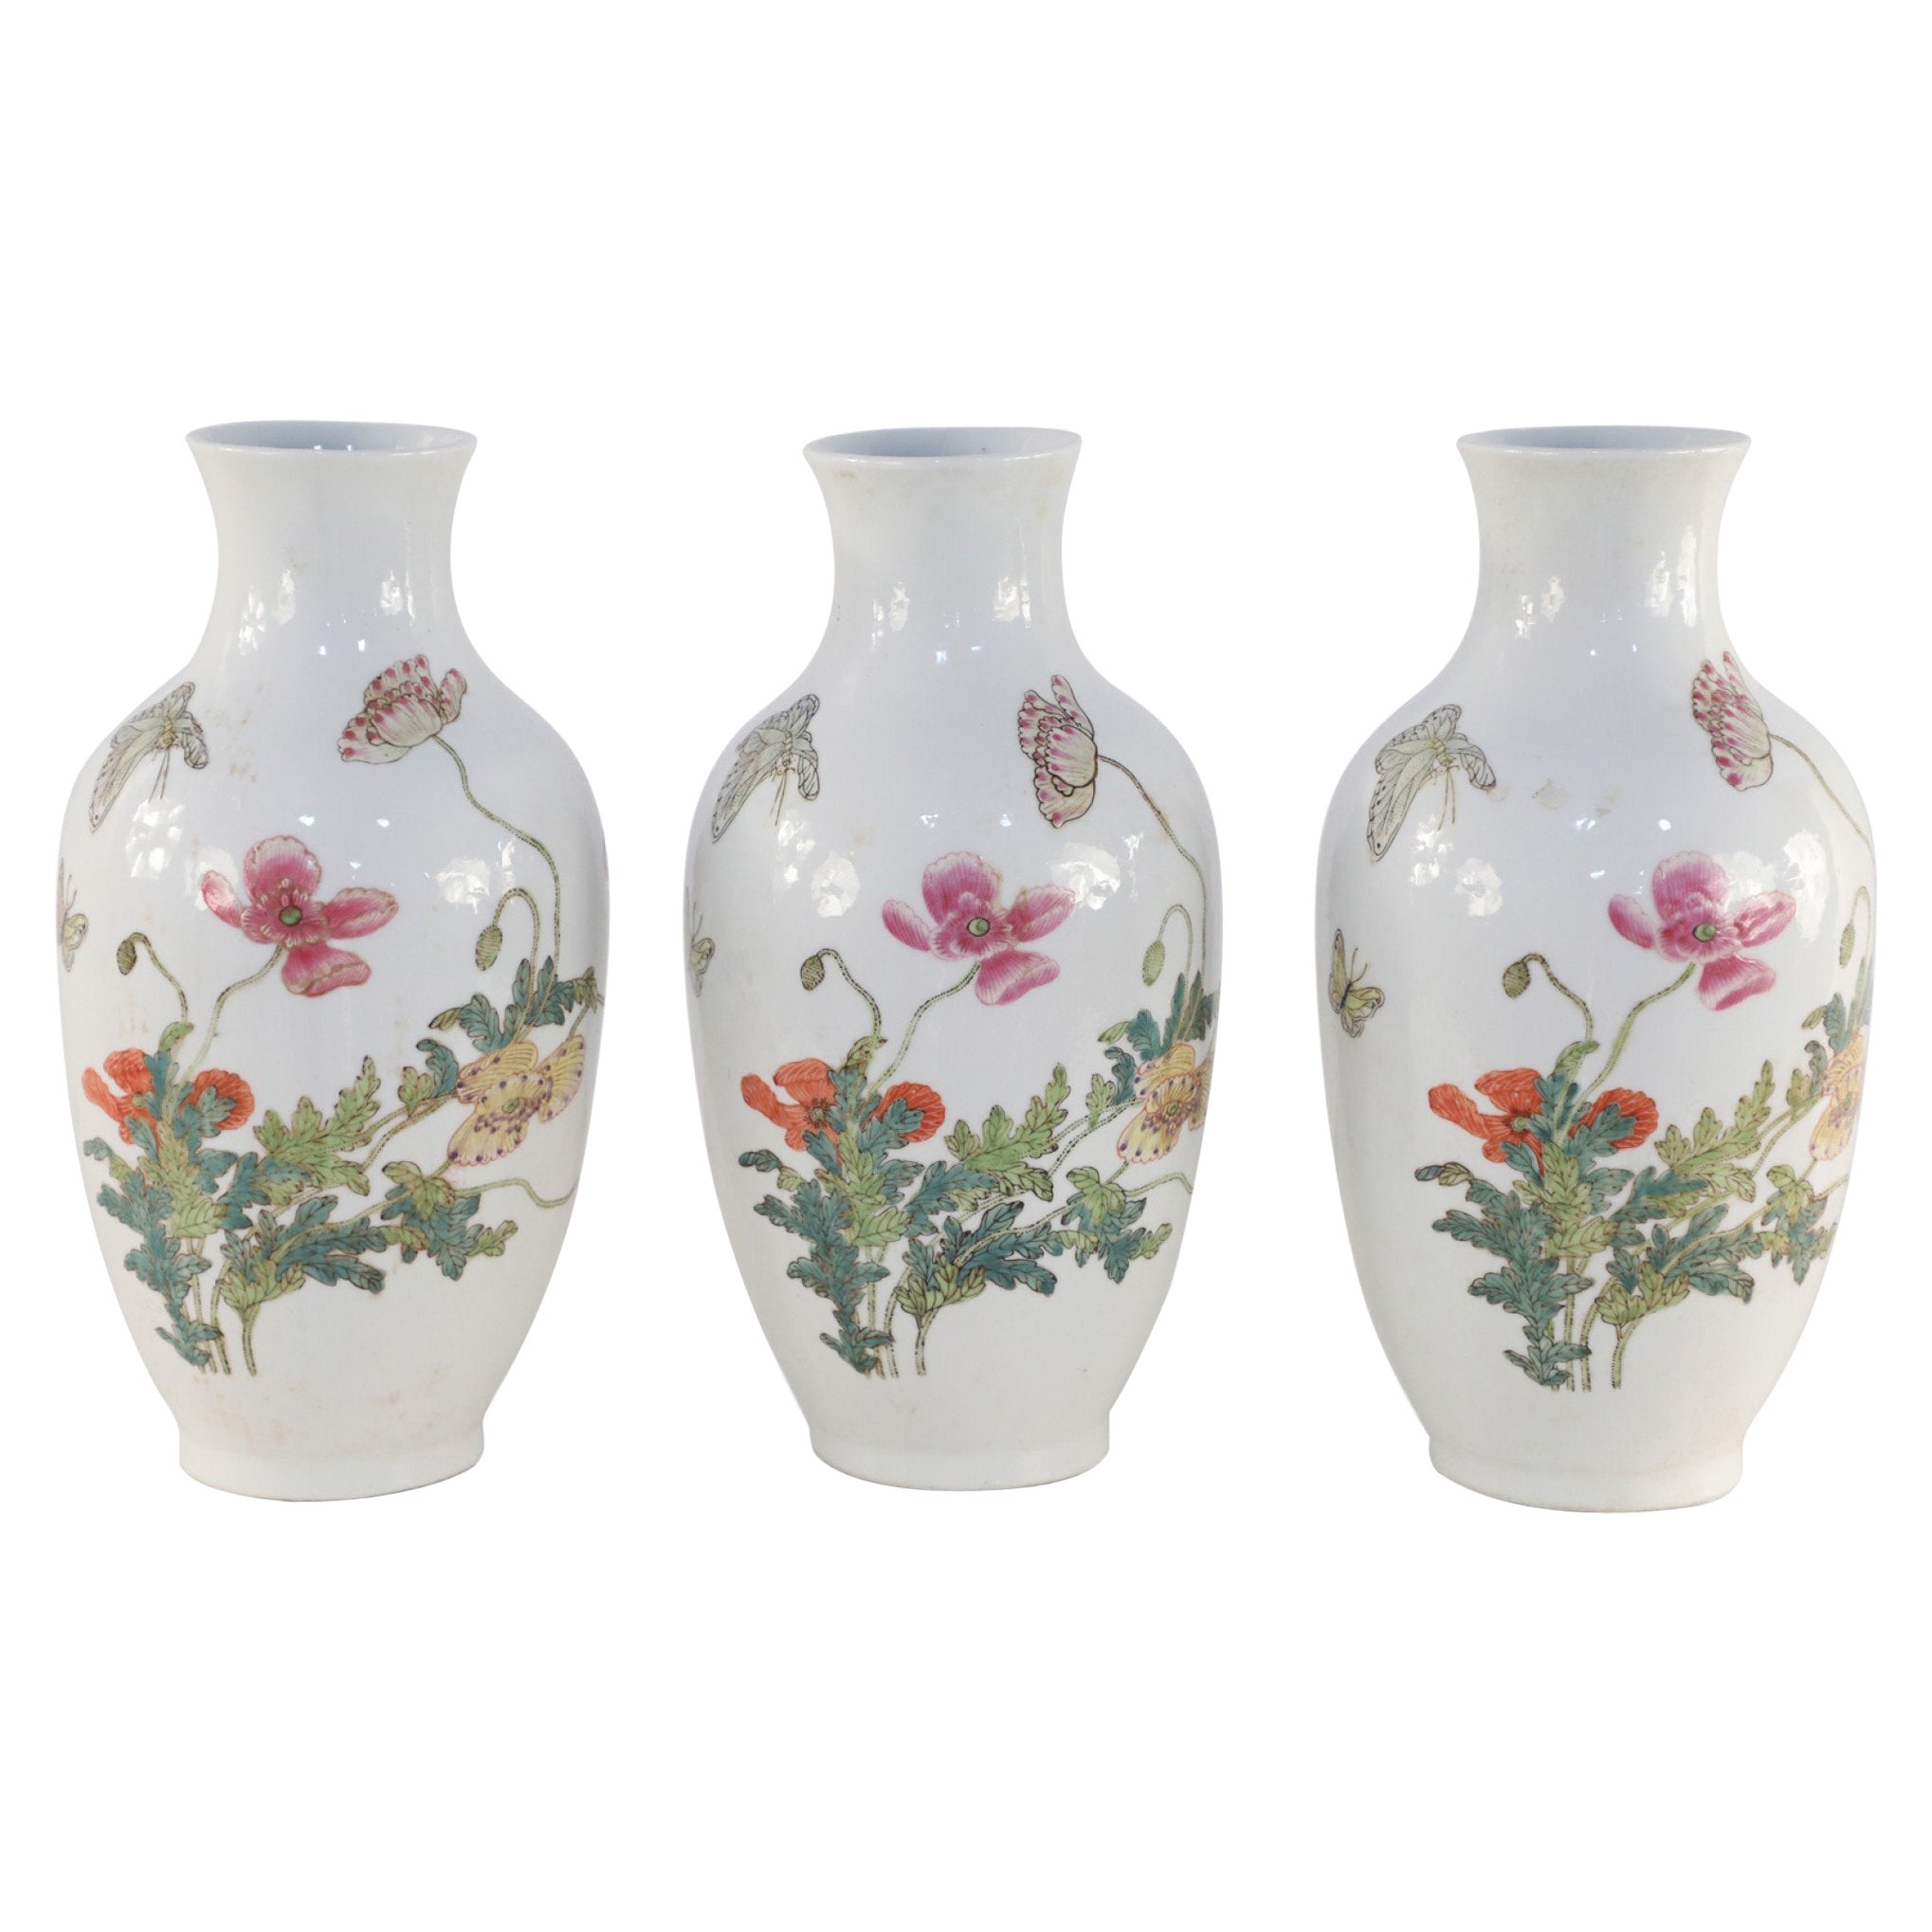 Chinesische weiße Porzellanvasen mit Blumen- und Schmetterlingsmuster, Chinesisch